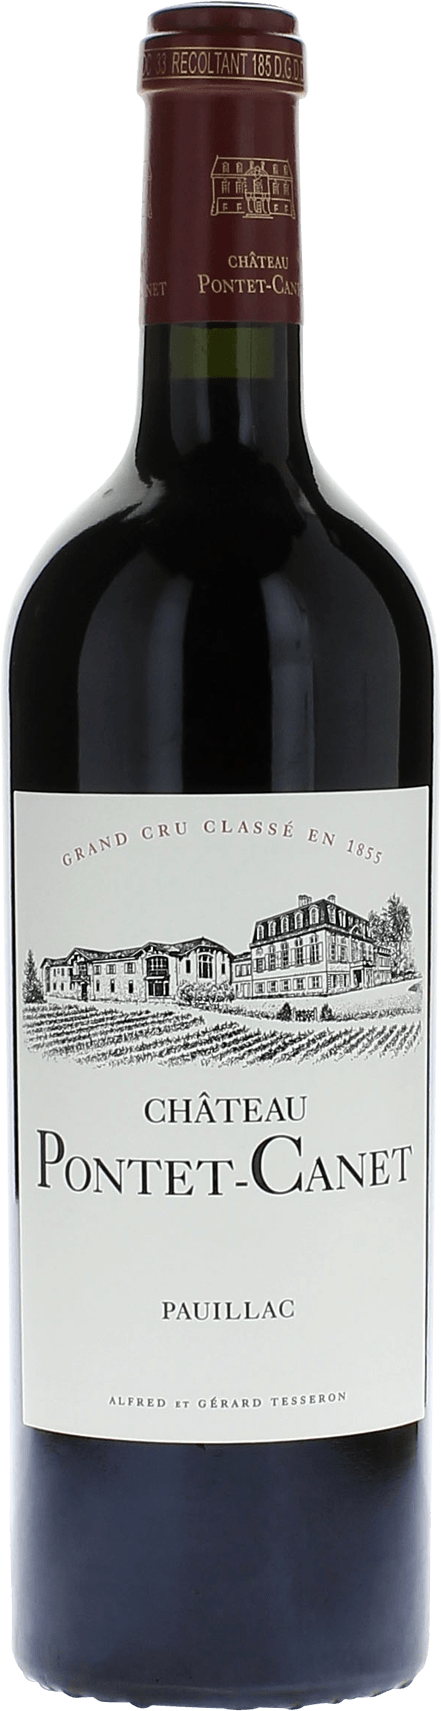 Pontet canet 1993 5me Grand cru class Pauillac, Bordeaux rouge